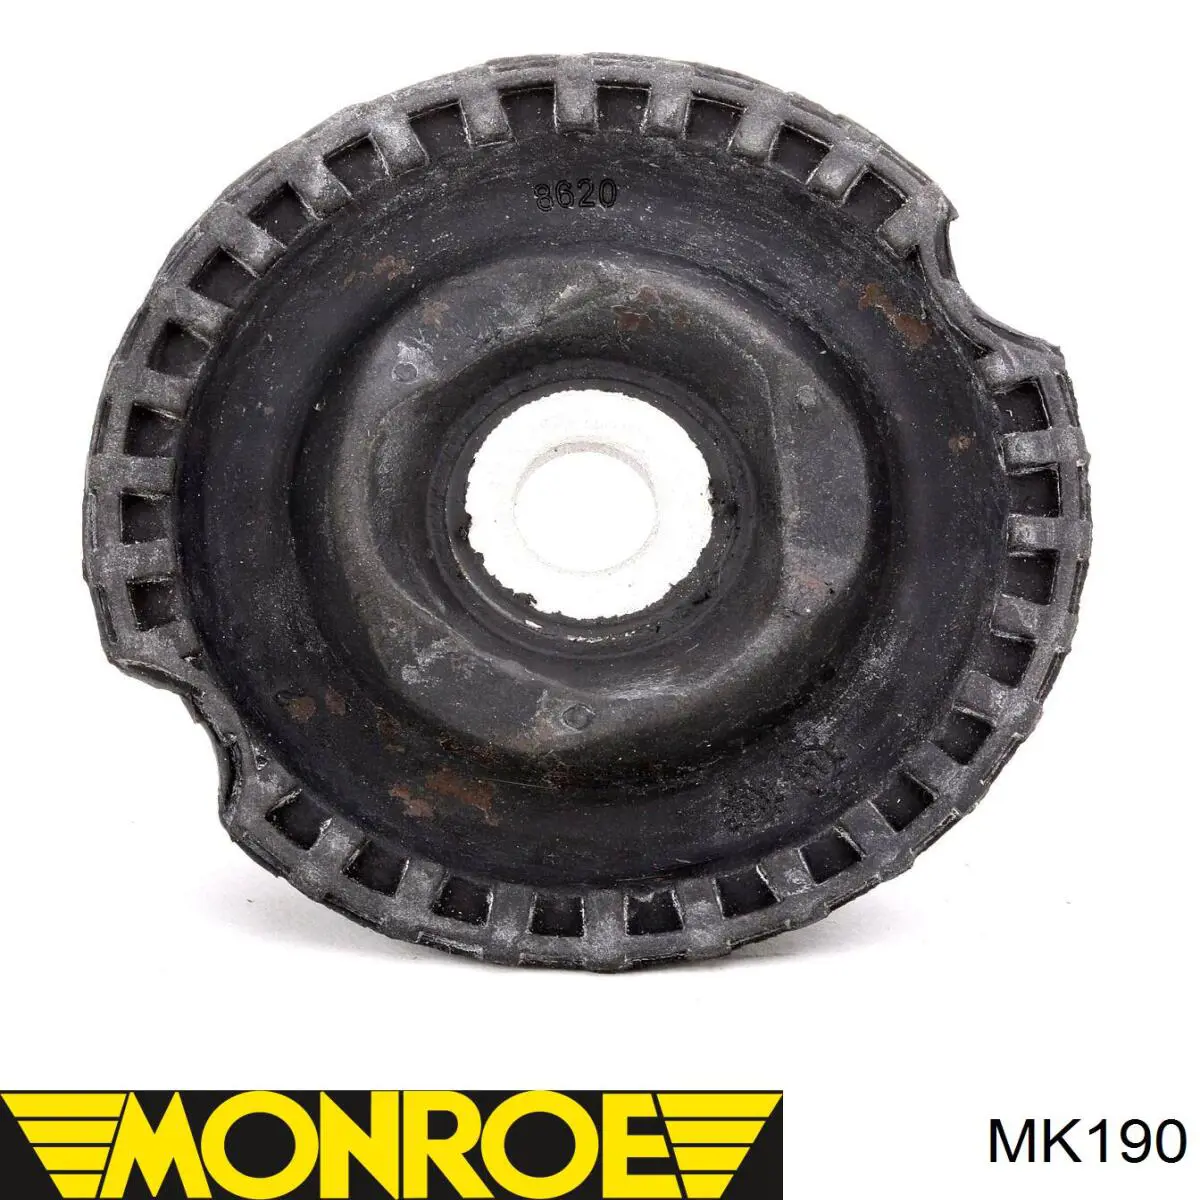 MK190 Monroe soporte amortiguador delantero